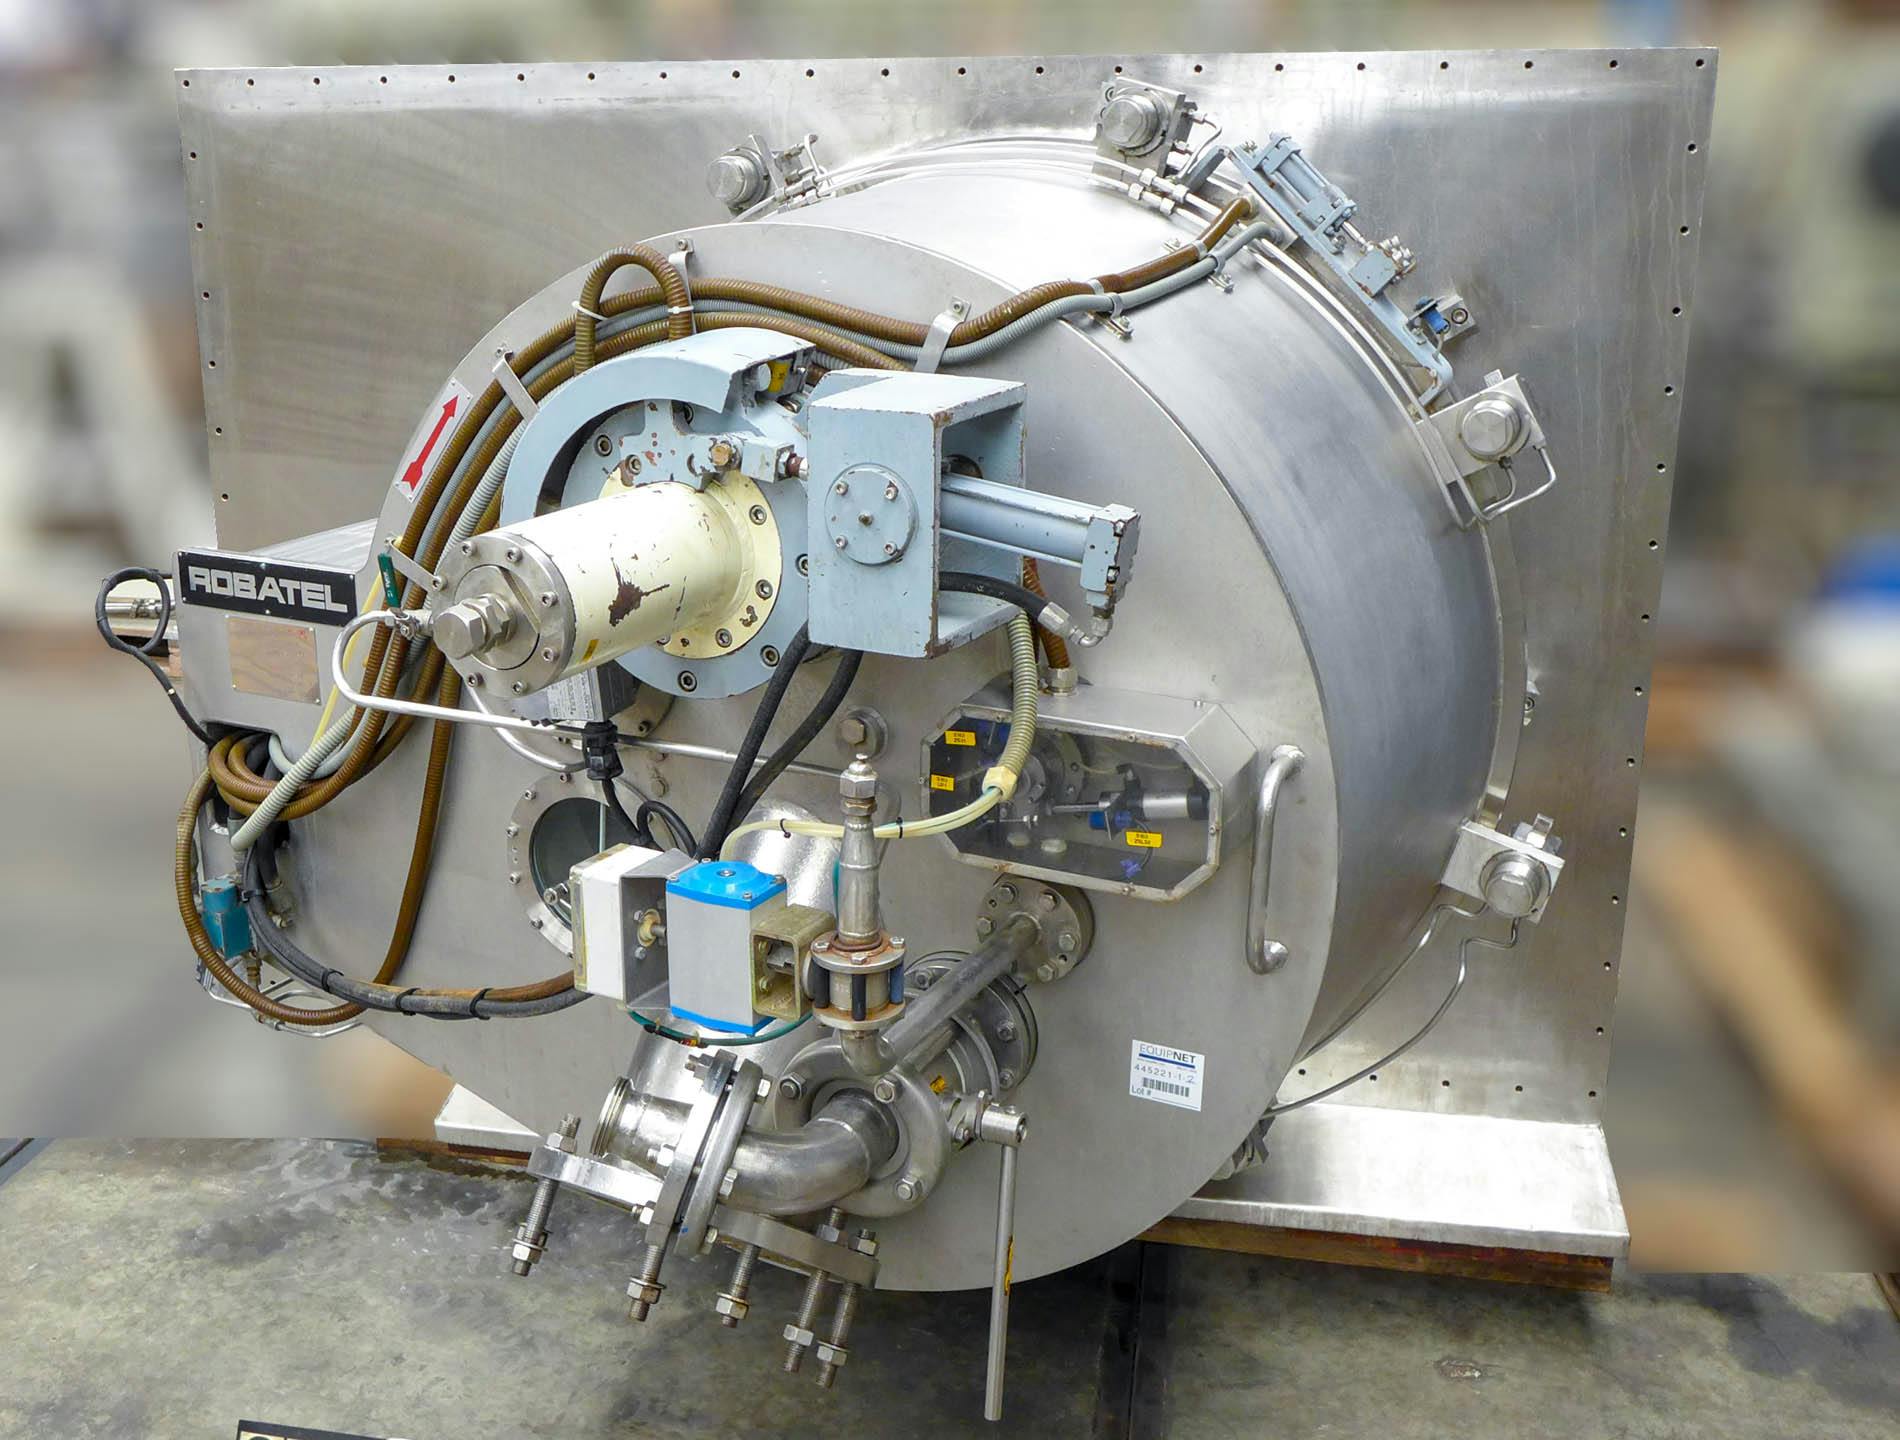 Robatel horizontal peeler centrifuge - Schraapcentrifuge - image 3